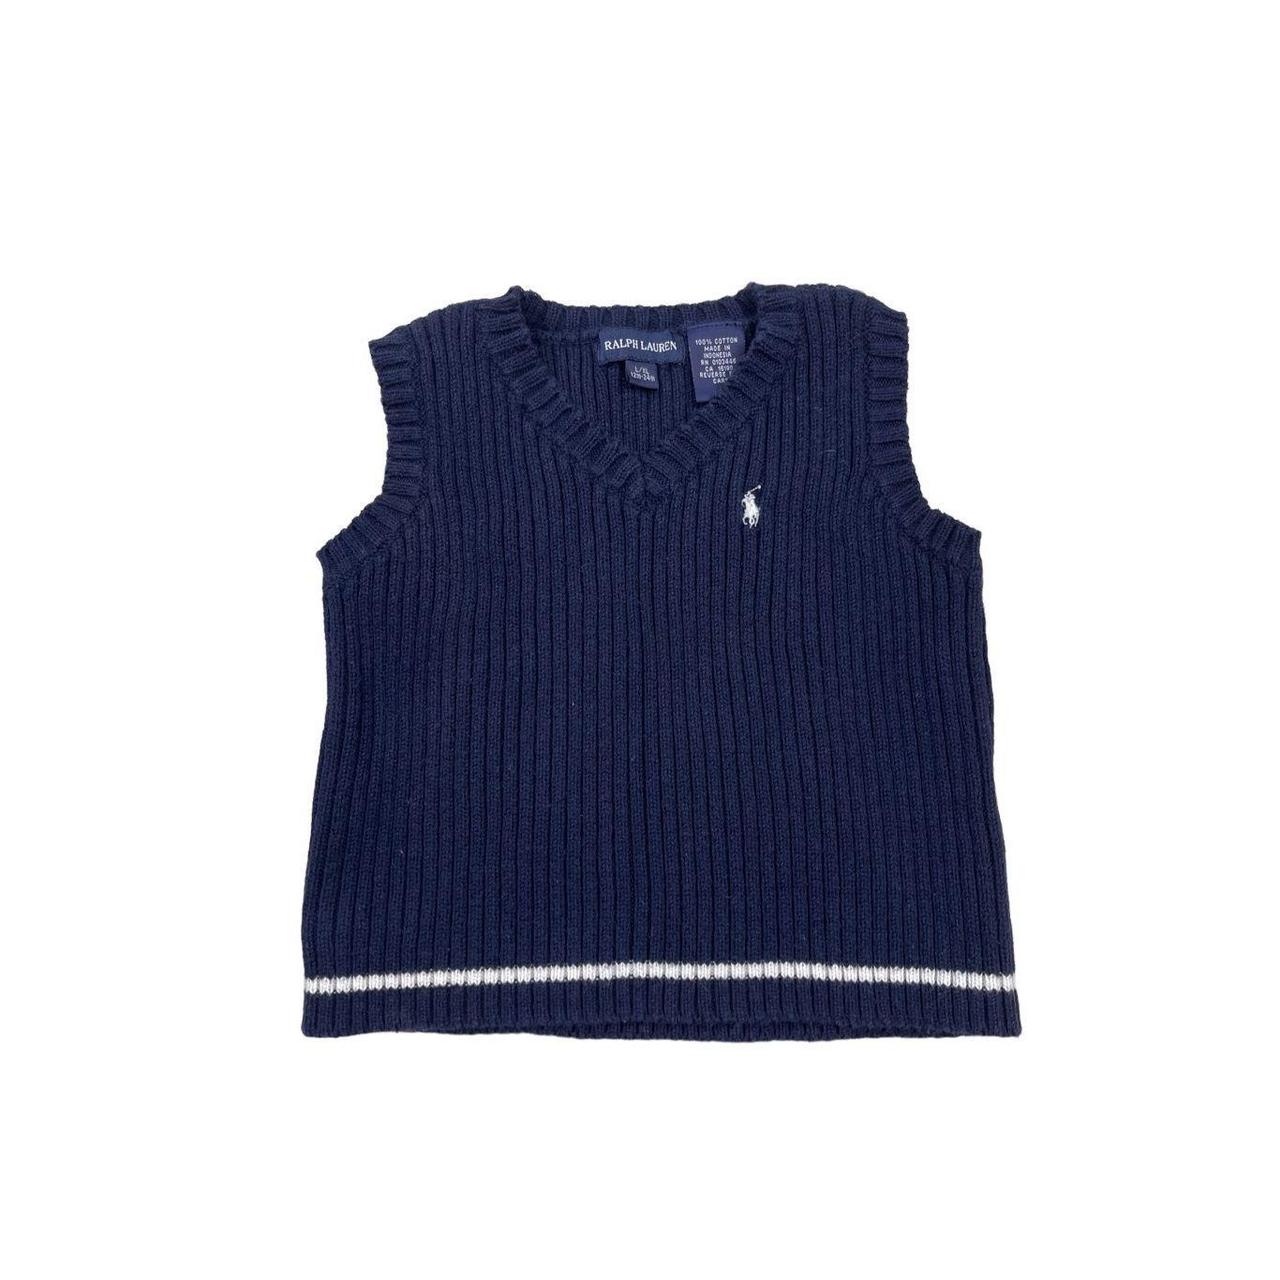 lauren ralph lauren knit turtleneck sweater - Depop